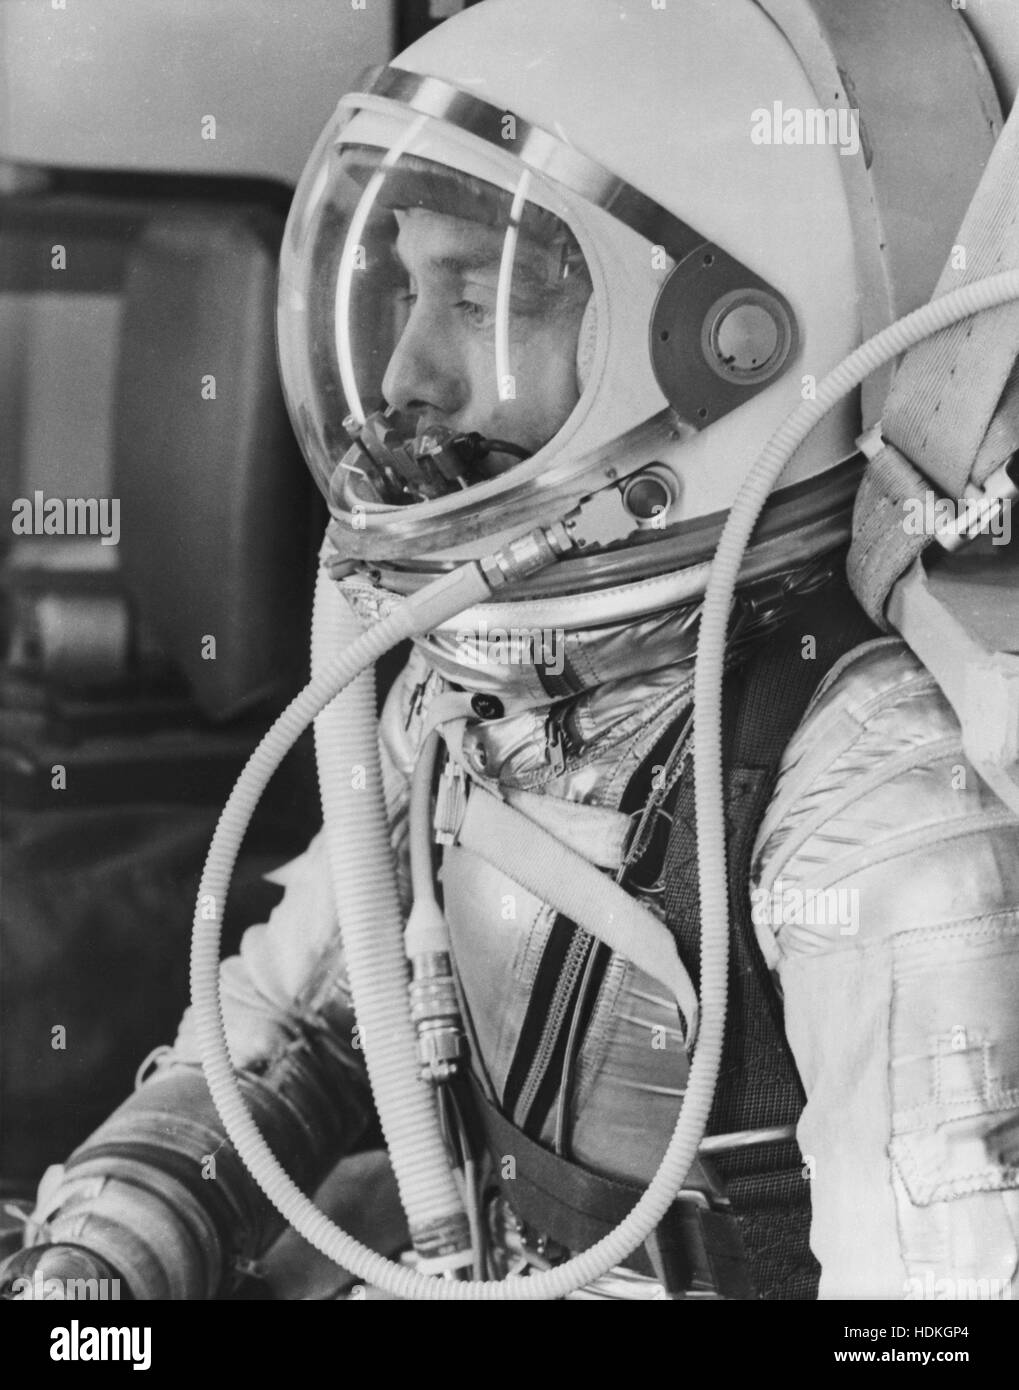 NASA-Astronaut Alan Shepard passt sich in Druck Anzug und Helm in Vorbereitung für den Flug des Mercury-Redstone 3 (MR-3), die erste amerikanische bemannte Raumfahrt, an Bord der Freedom 7 Kapsel auf der Cape Canaveral Air Force Station starten Komplex 5 1. Januar 1961 in Cape Canaveral, Florida. Stockfoto